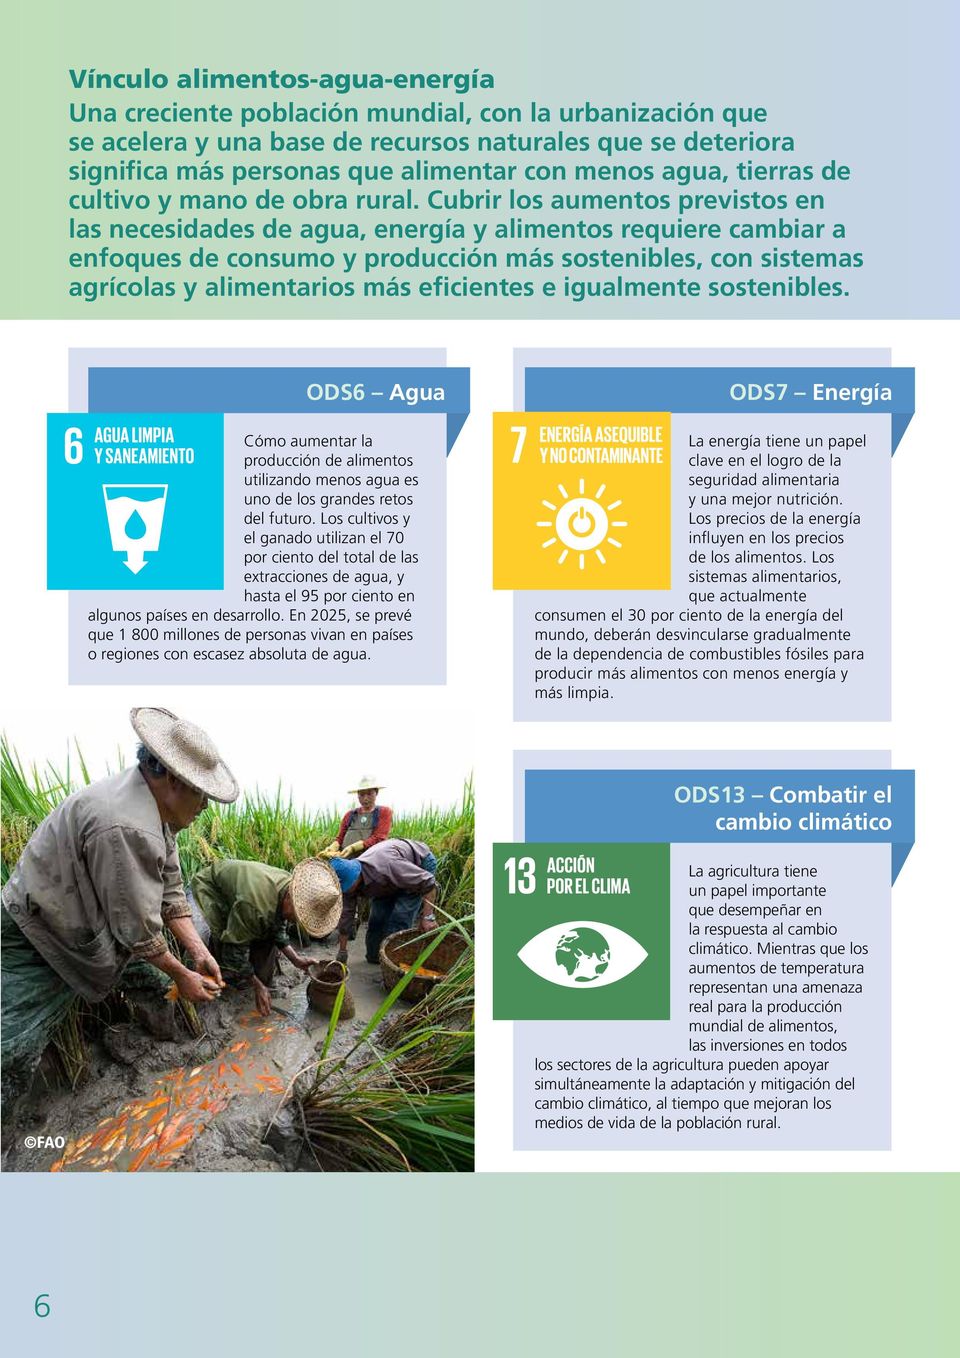 Cubrir los aumentos previstos en las necesidades de agua, energía y alimentos requiere cambiar a enfoques de consumo y producción más sostenibles, con sistemas agrícolas y alimentarios más eficientes